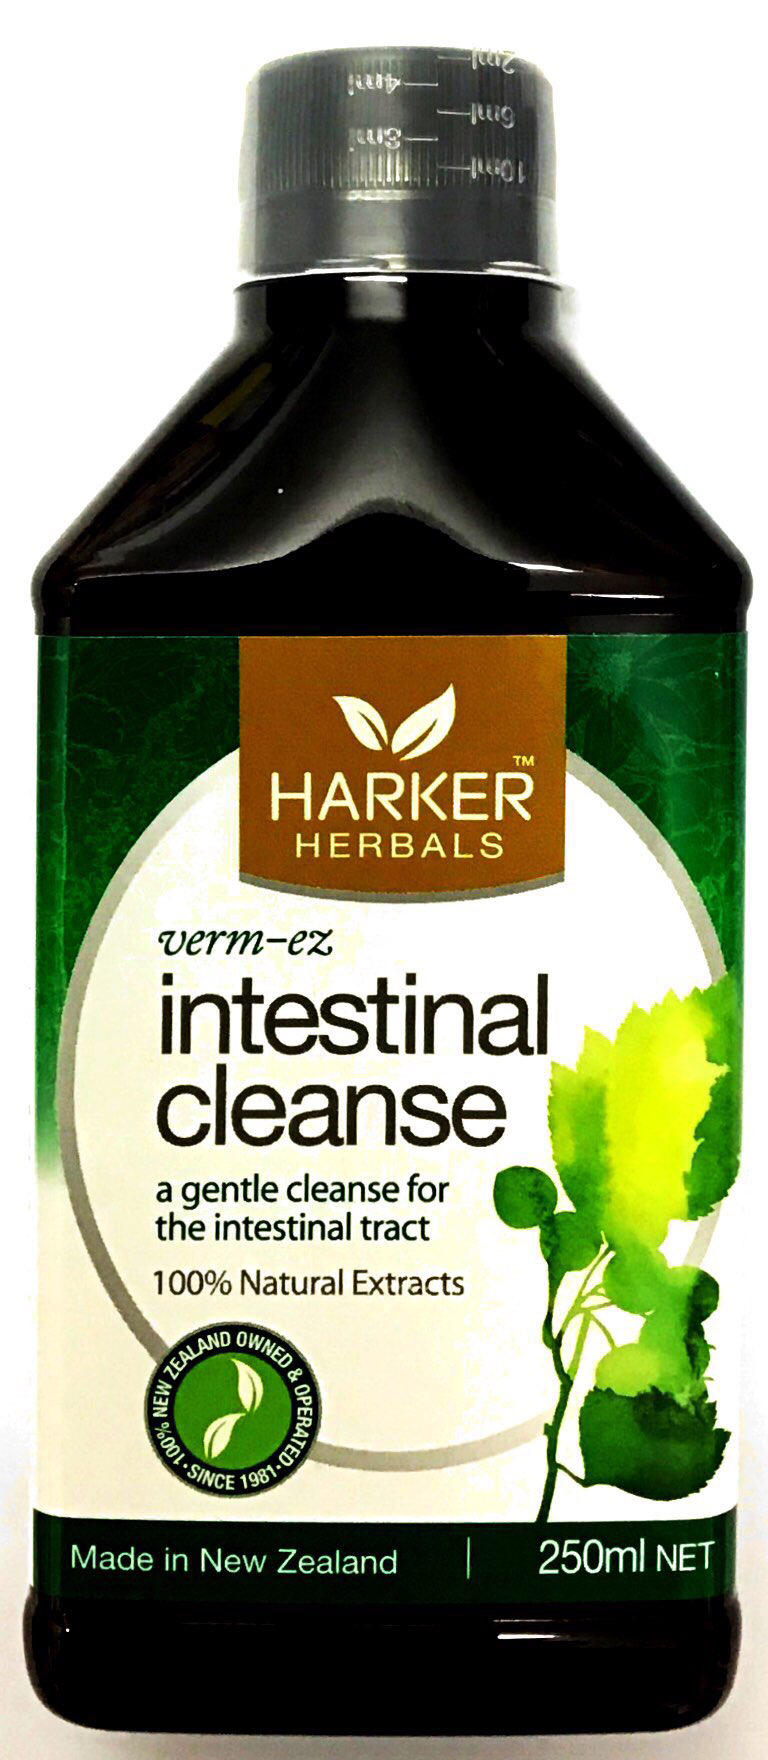 Harker herbals verm-ez intestinal cleanse - 250 ml - Pakuranga Pharmacy